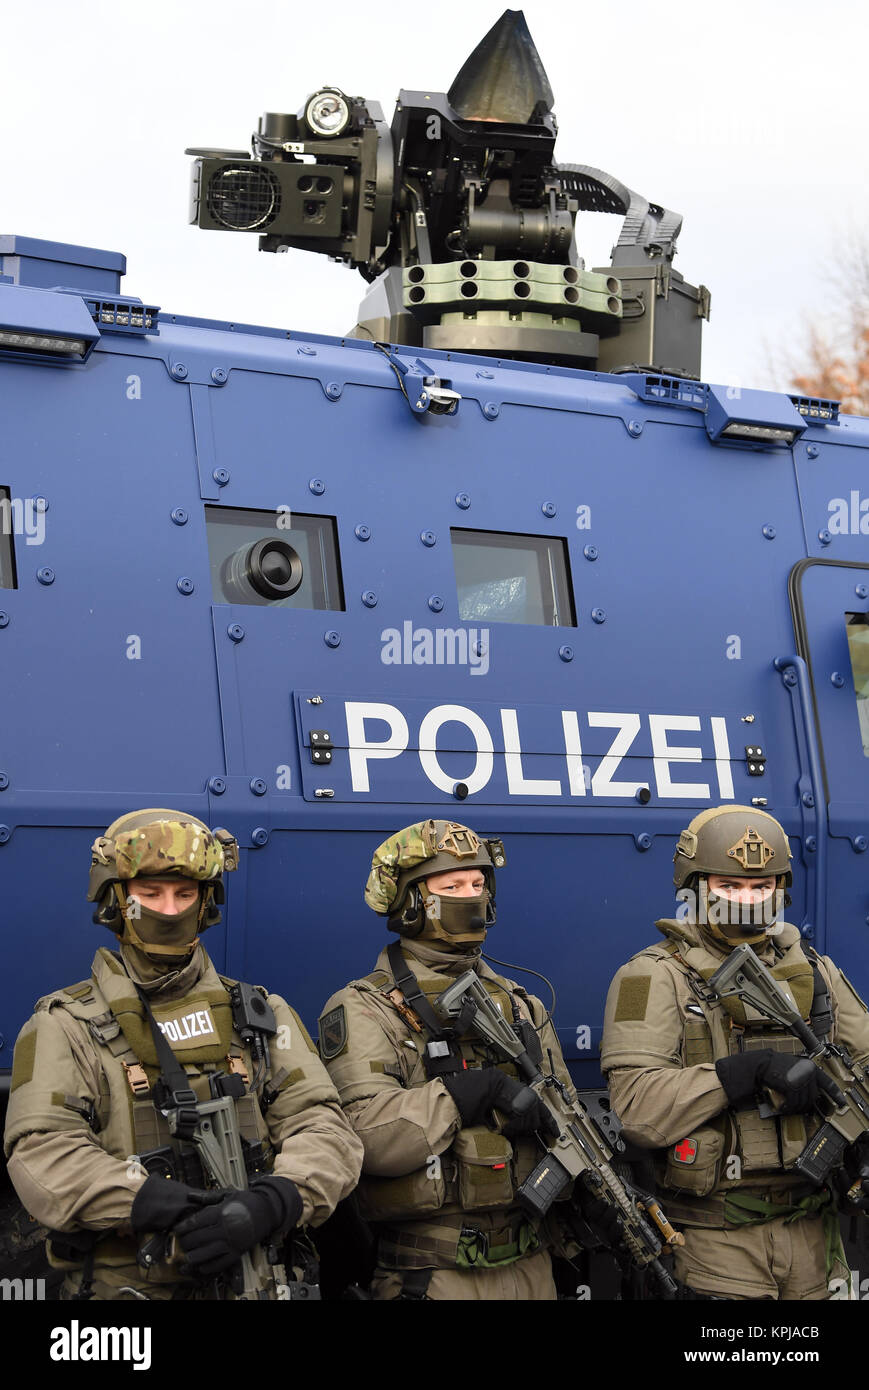 leipzig-germany-15-december-2017-armed-police-officers-of-the-sek-KPJACB.jpg